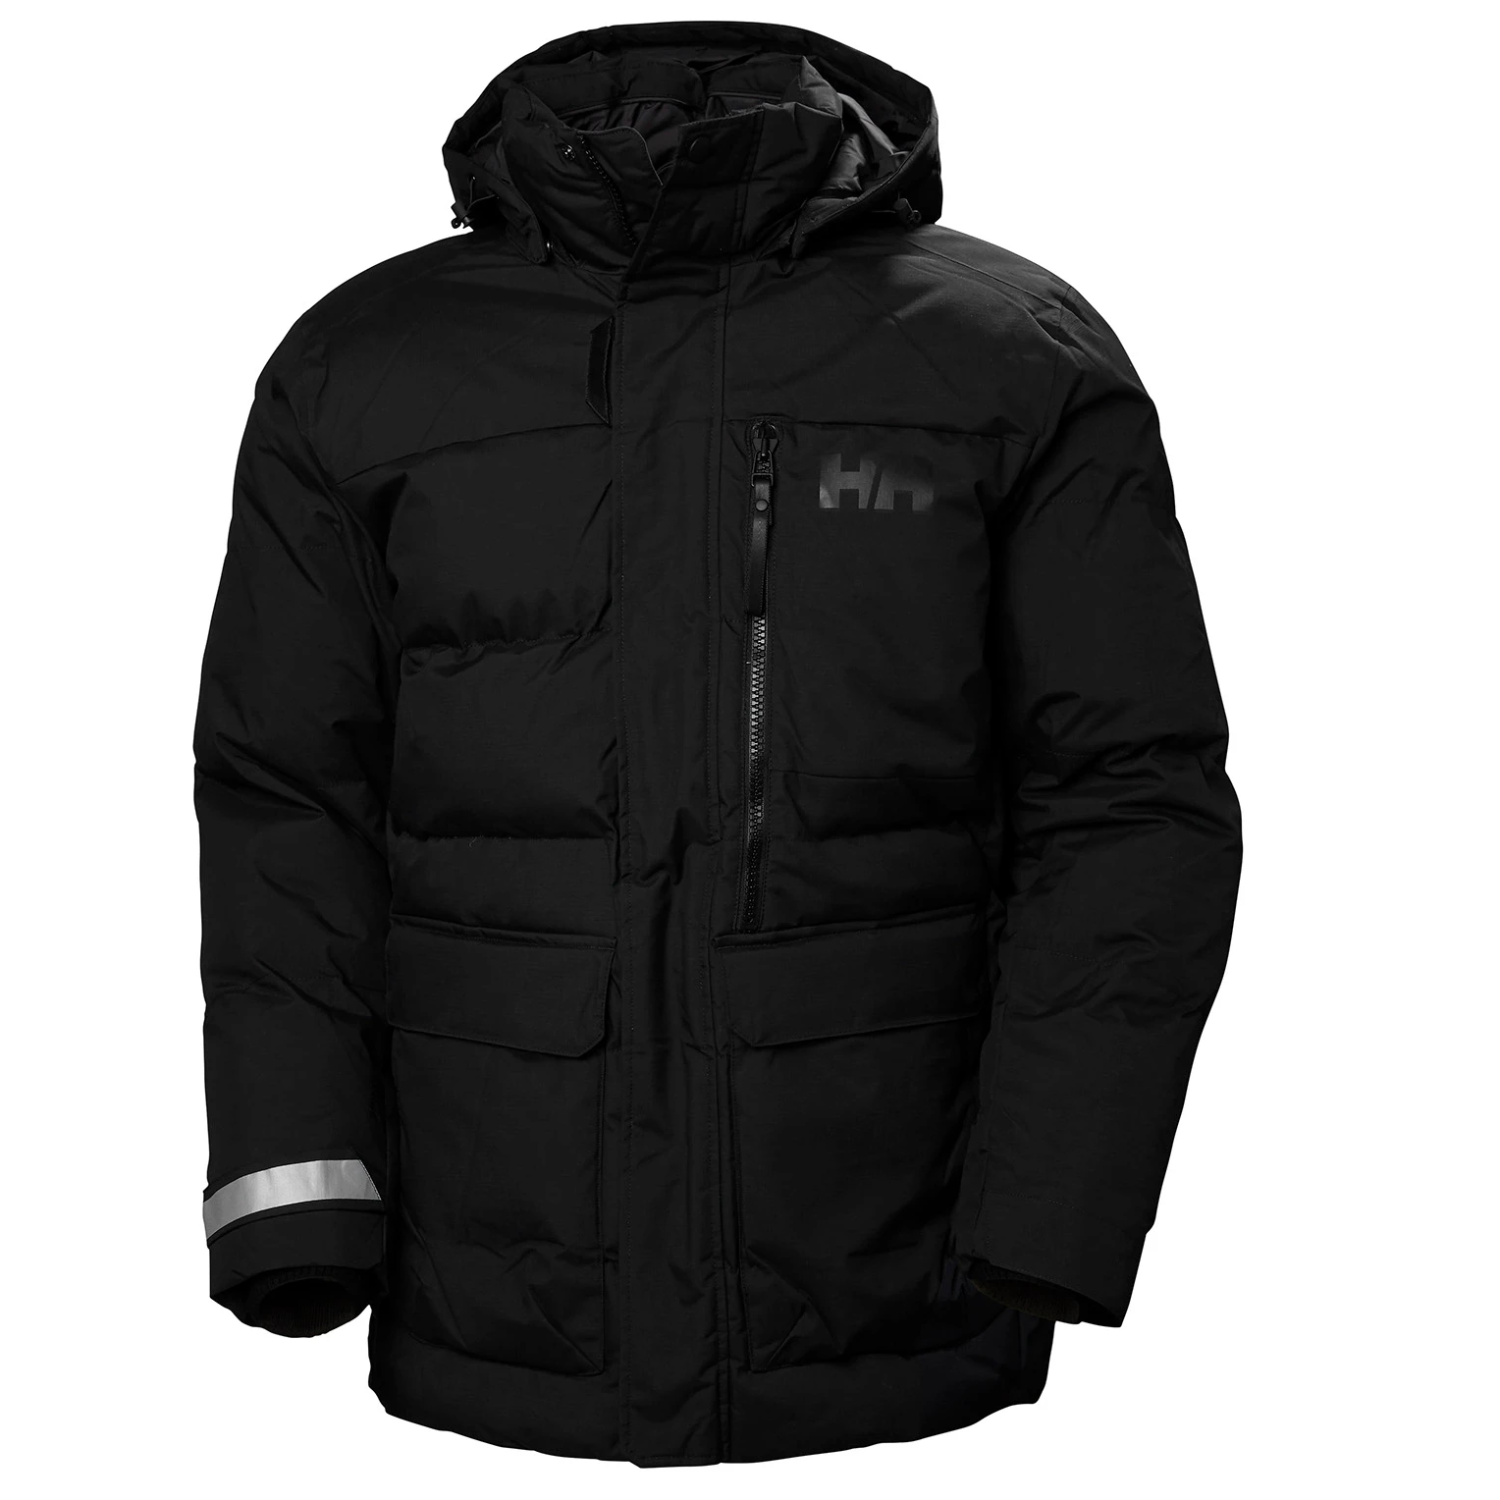 Helly Hansen Tromsoe Winter Jacket Black